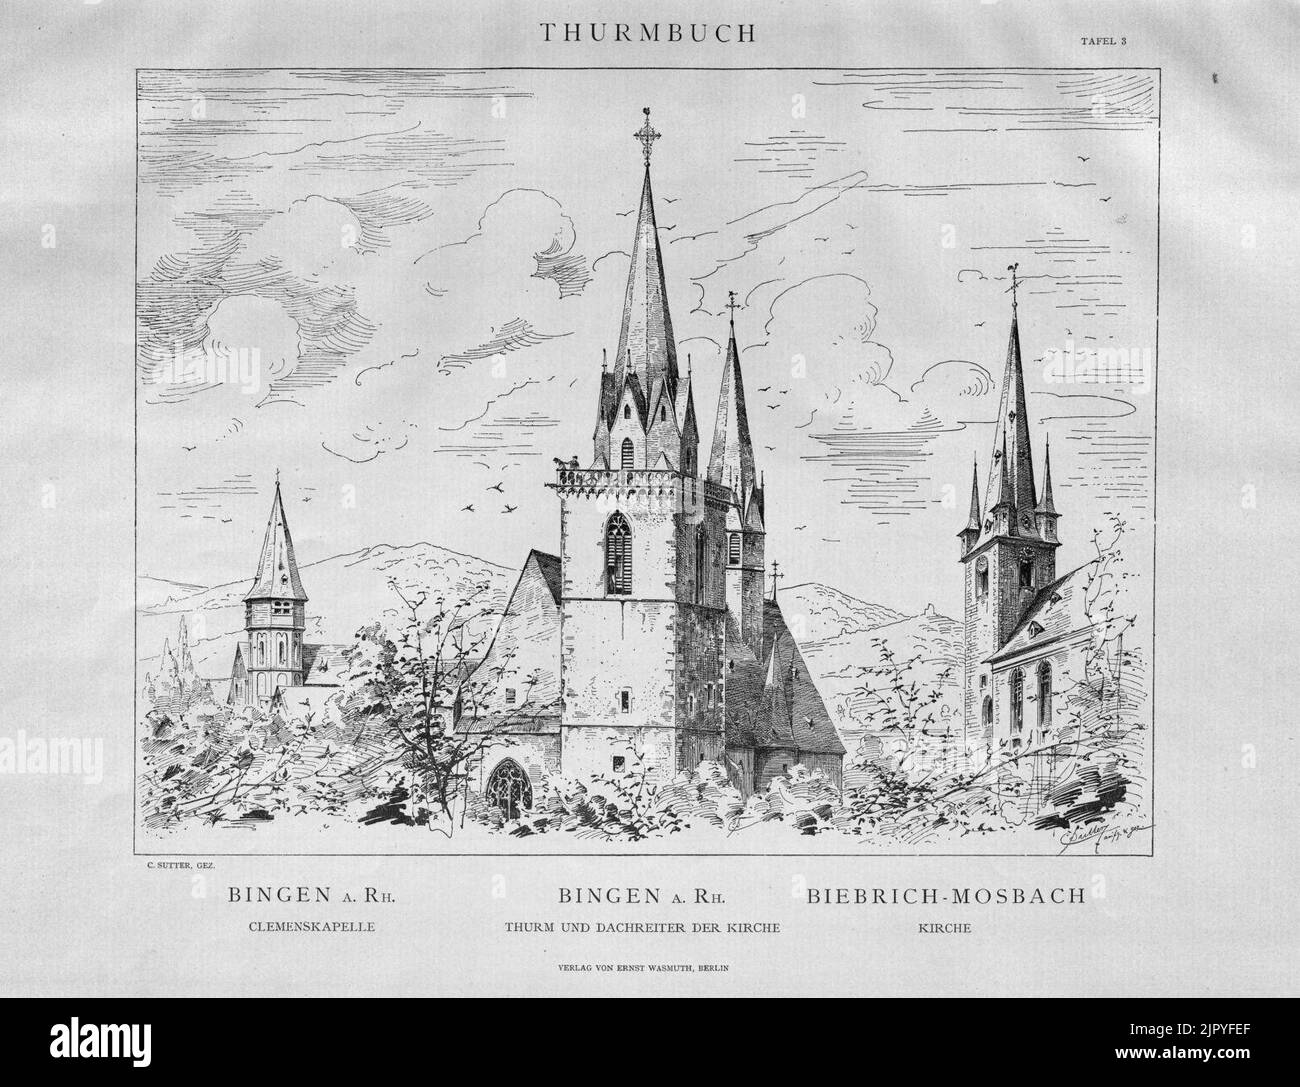 Thurmbuch Tafel 003 Bingen am Rhein Biebrich-Mosbach Stockfoto